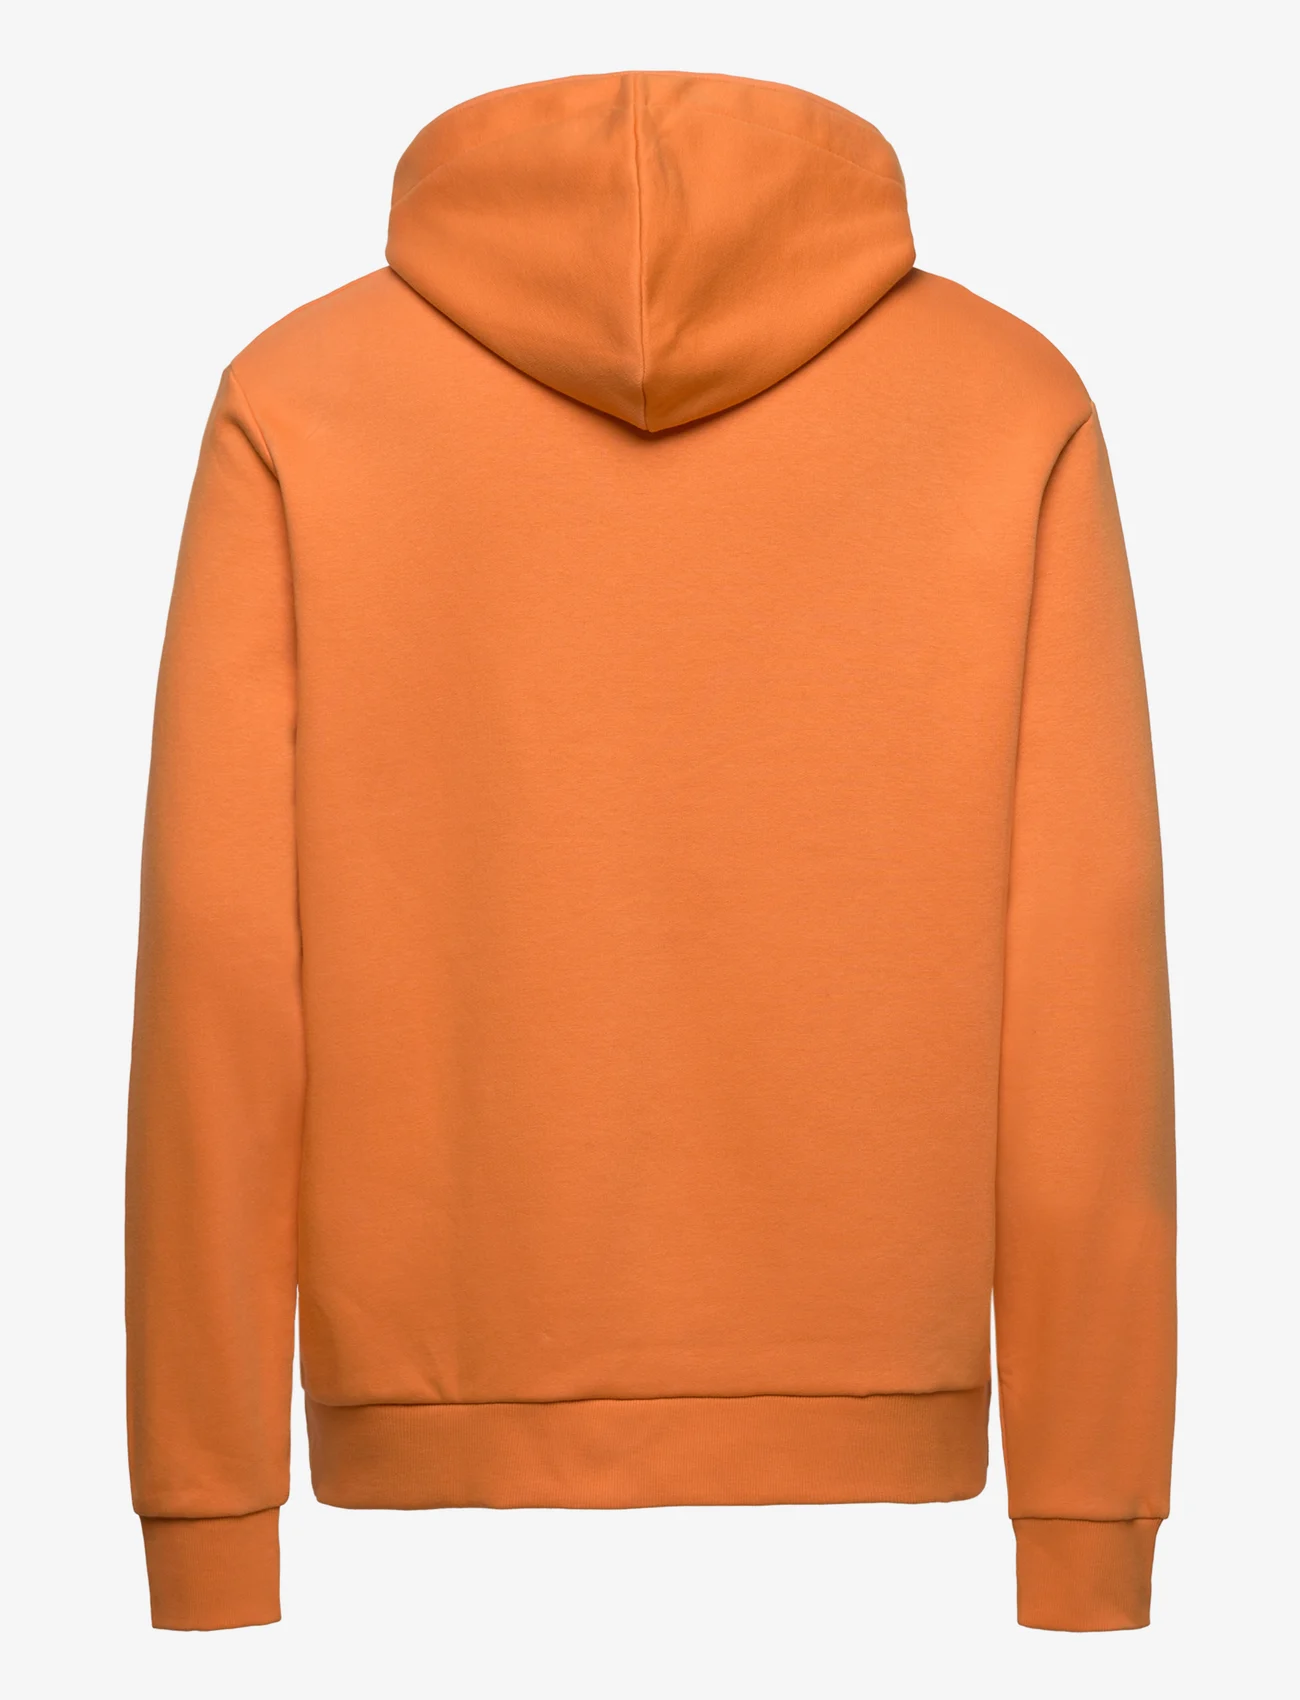 Peak Performance - M Logo Hood Sweatshirt - orange flare - 1